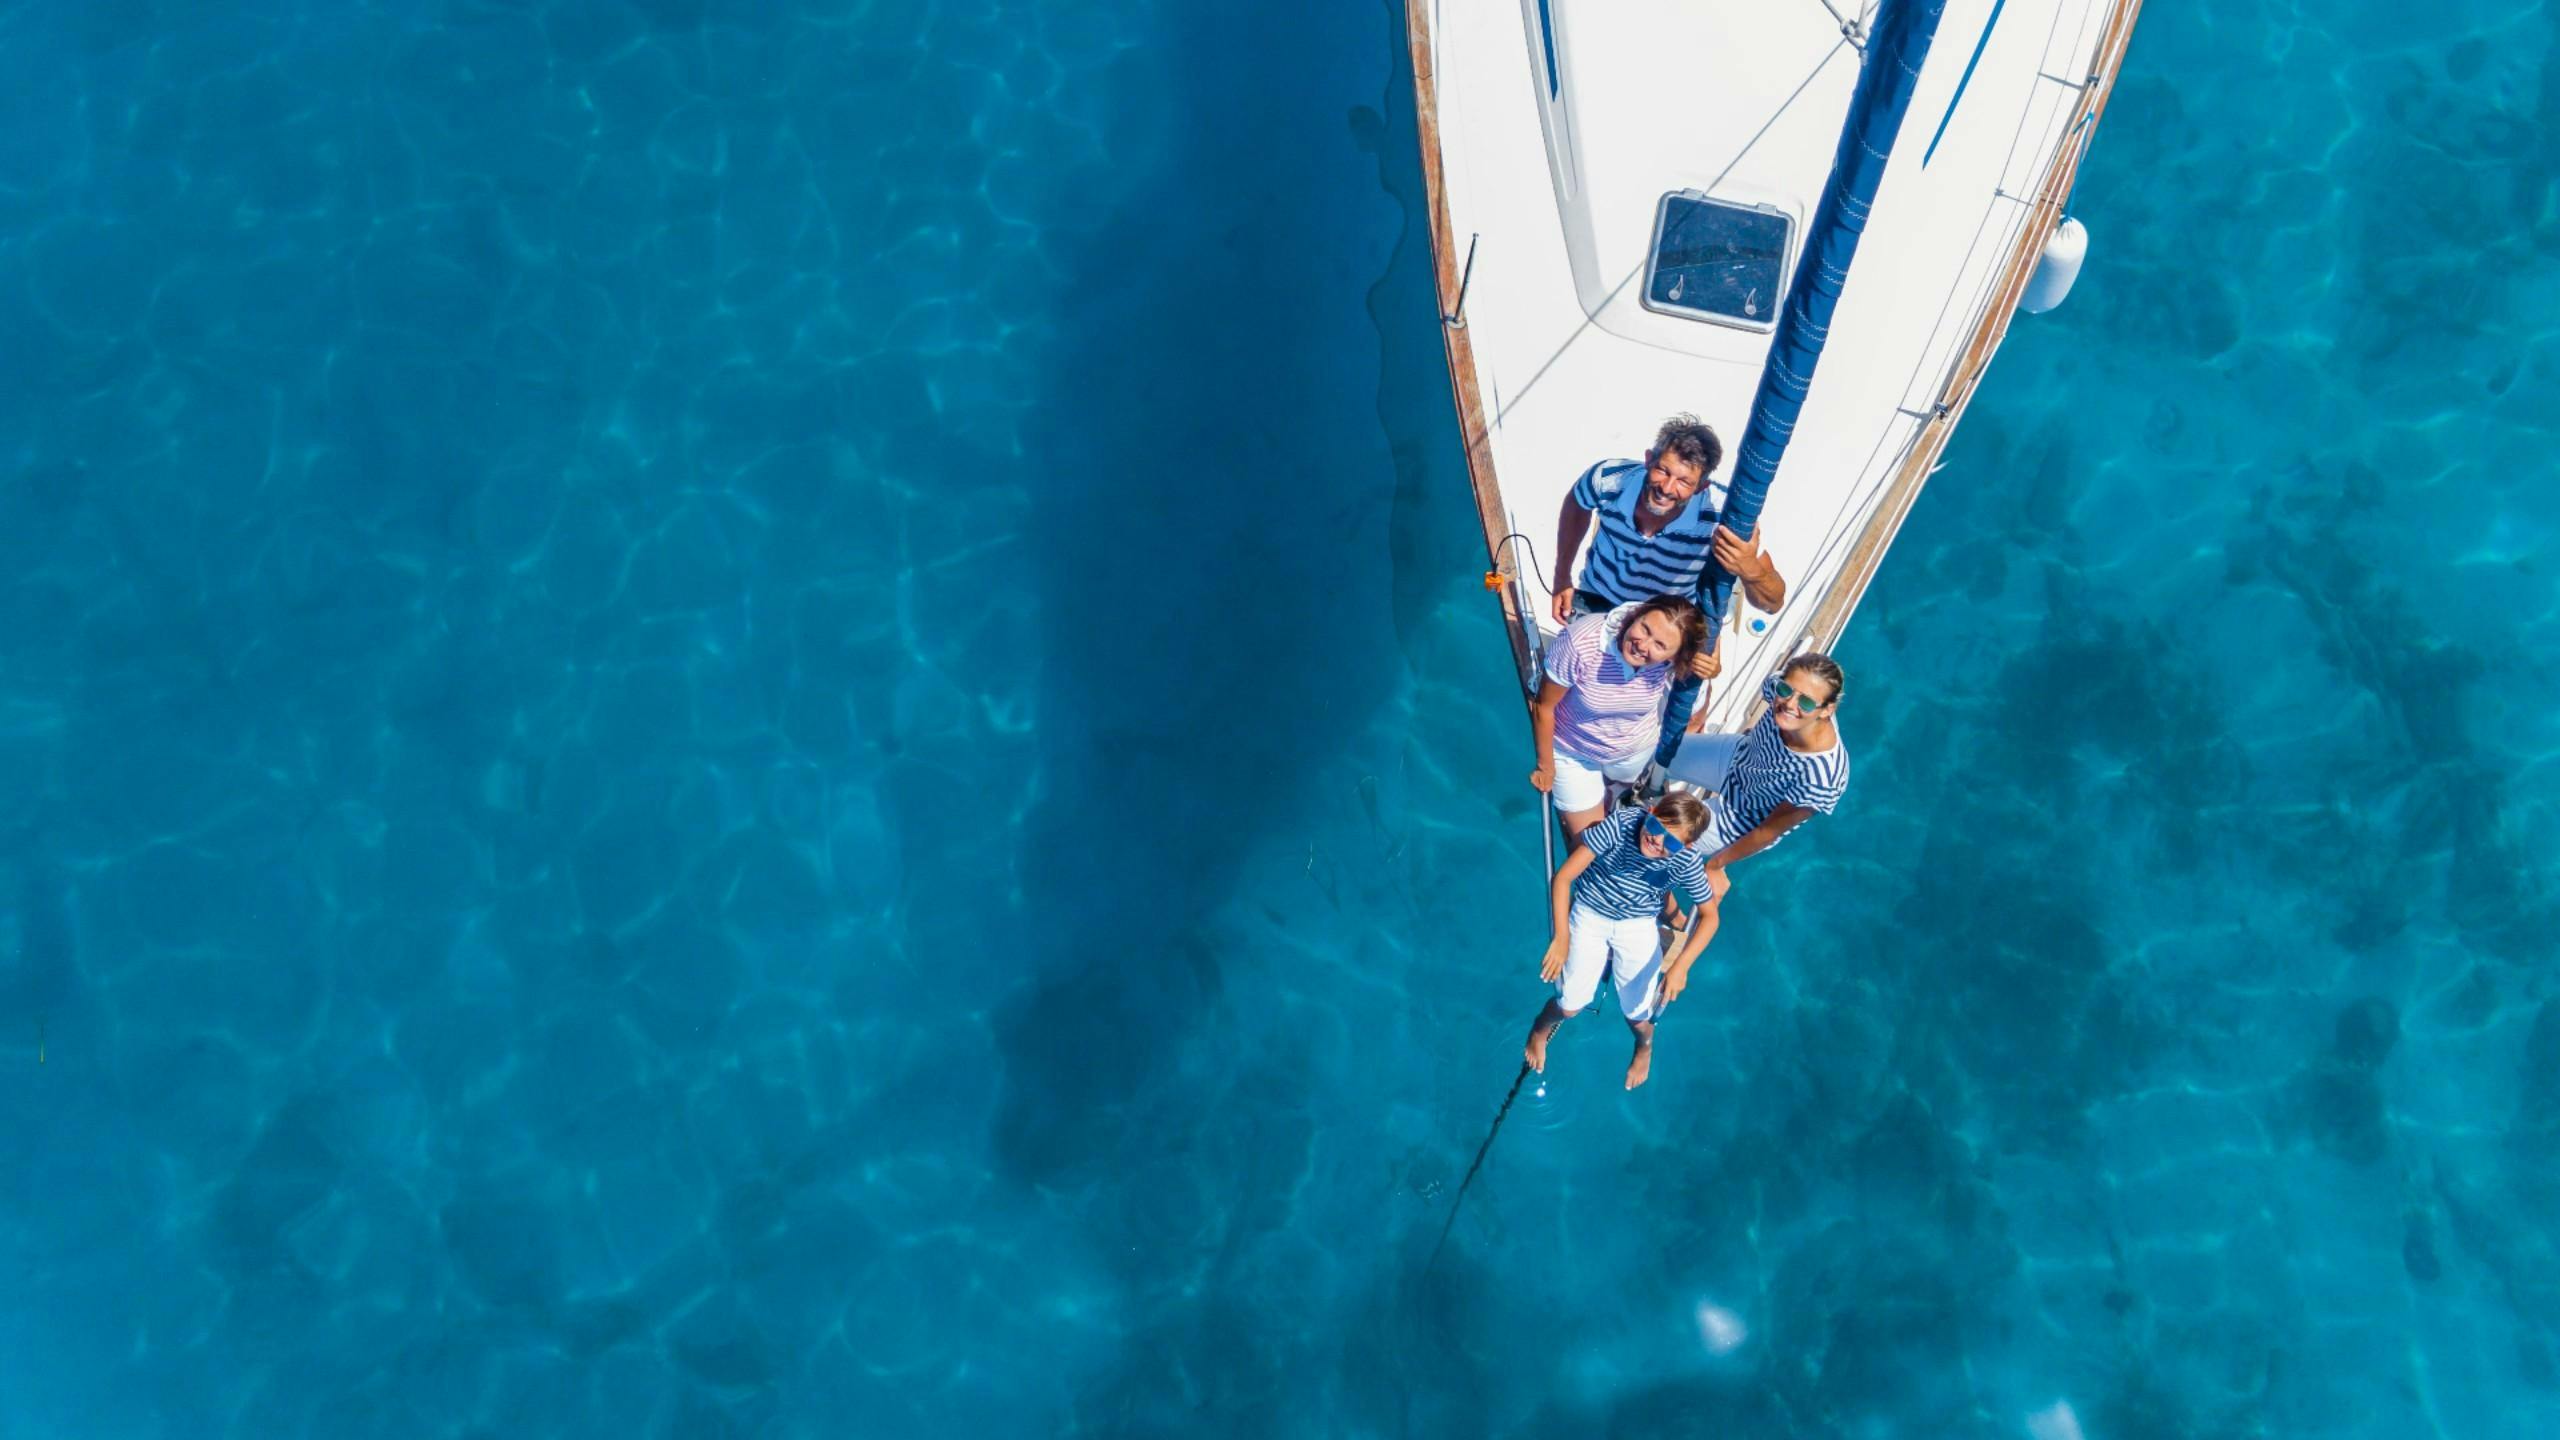 Une famille navigue sur des eaux cristallines à bord d'un bateau affrété lors d'une location de bateau.